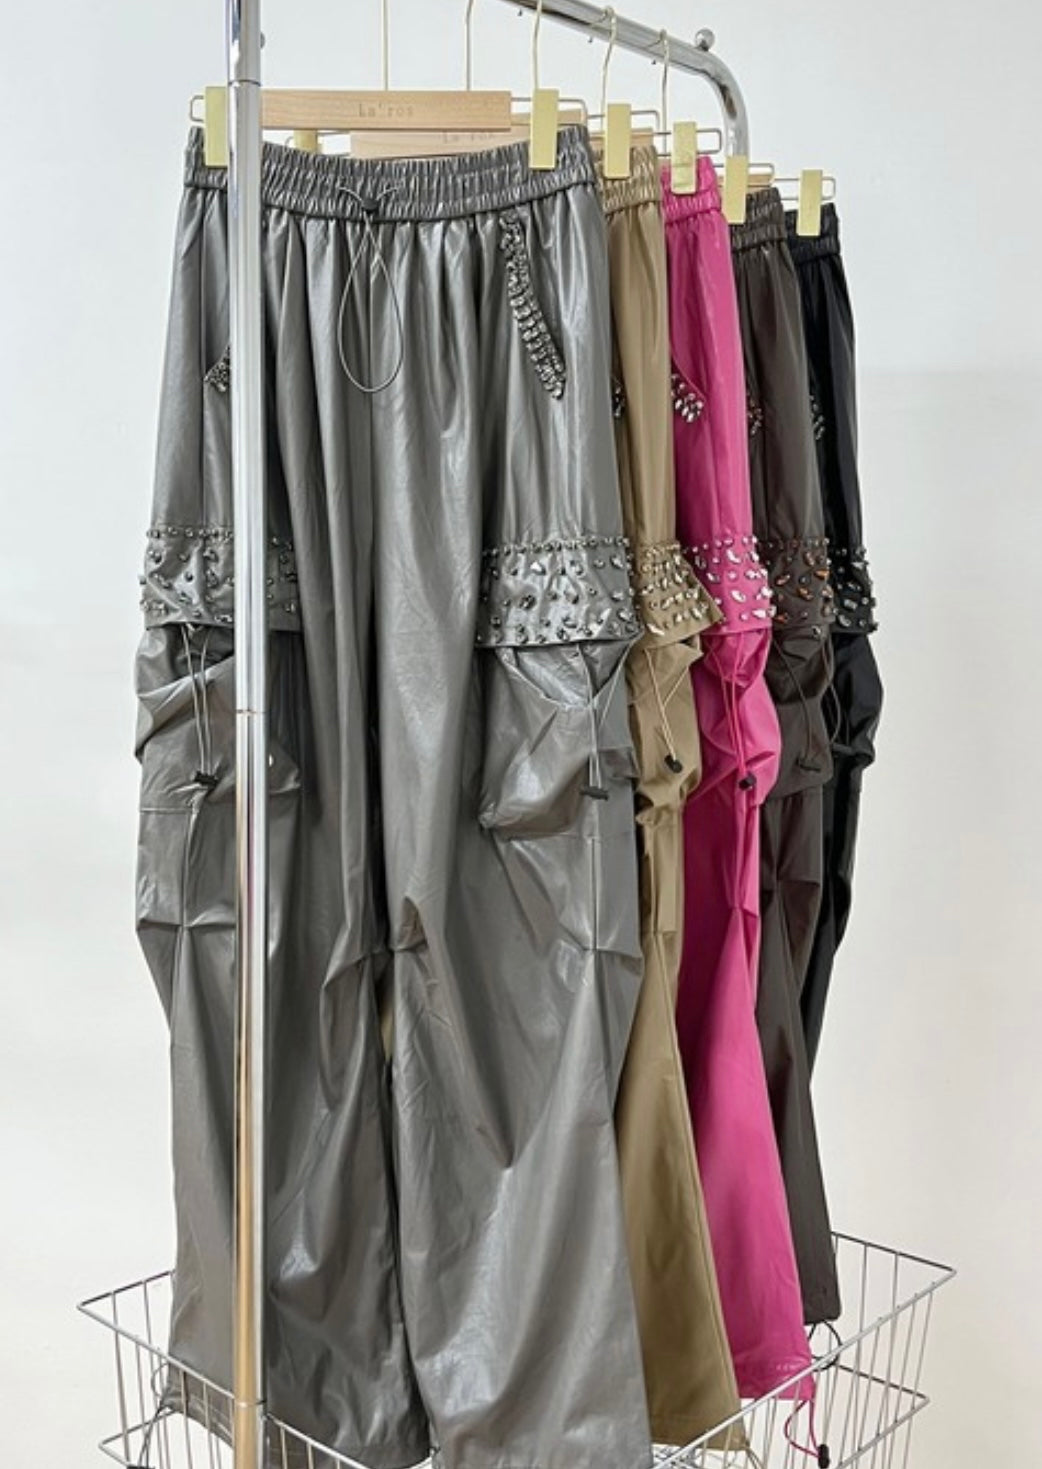 Rhinestone Embellished Cargo Pants (PINK/KHAKI/BLACK)